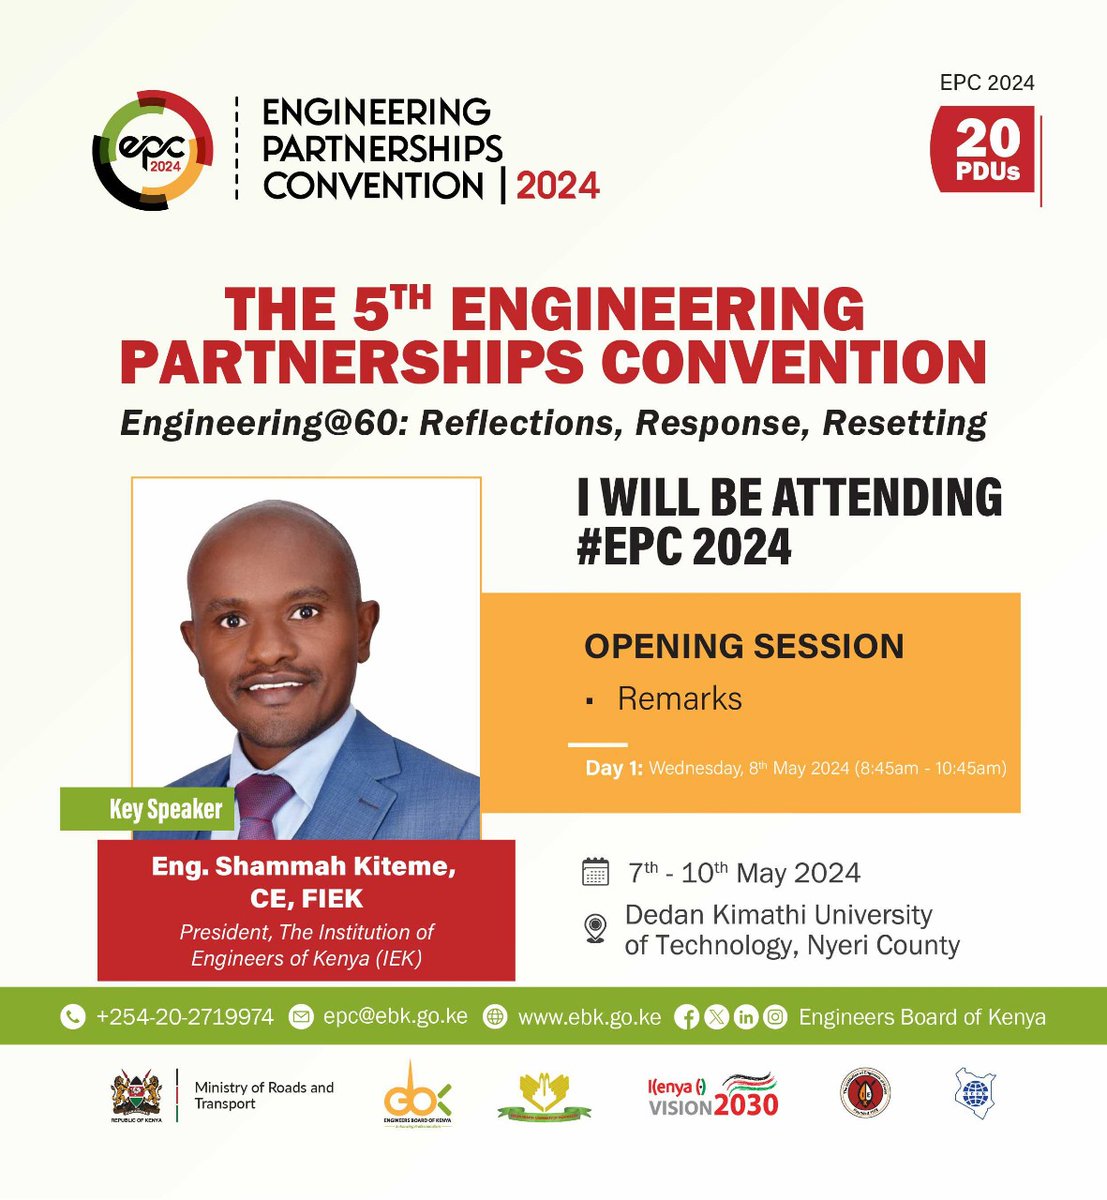 We have important conversations happening at EPC next week In Nyeri County. I will be attending @citizentvkenya @K24Tv @KBCChannel1 @ntvkenya @StandardKenya @TheIEK @EngineersBoard